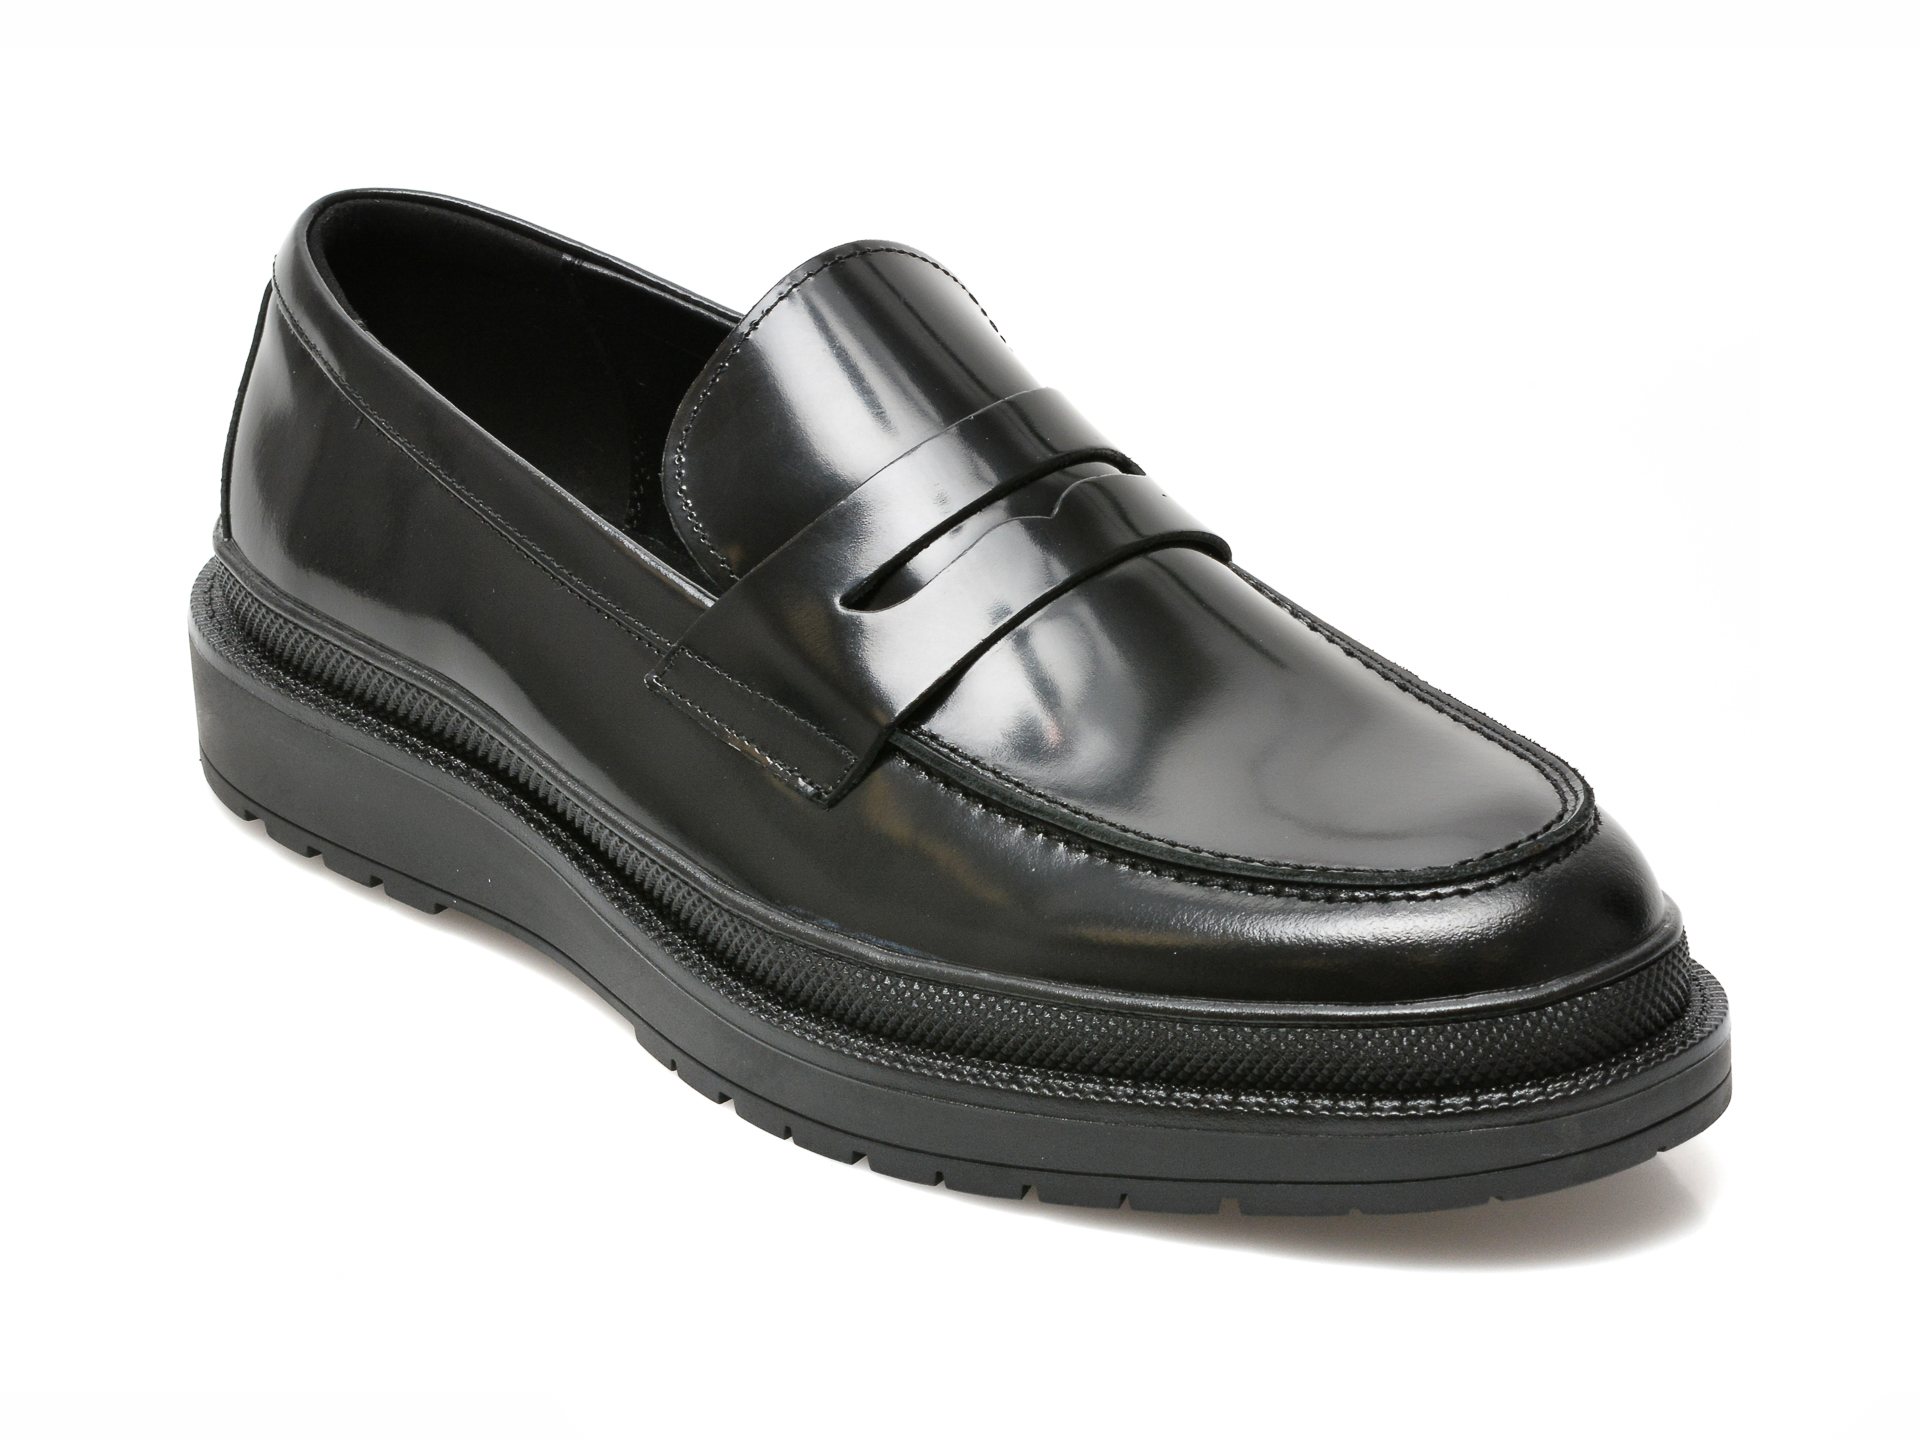 Pantofi ALDO negri, KEROUAC001, din piele naturala lacuita Aldo Aldo